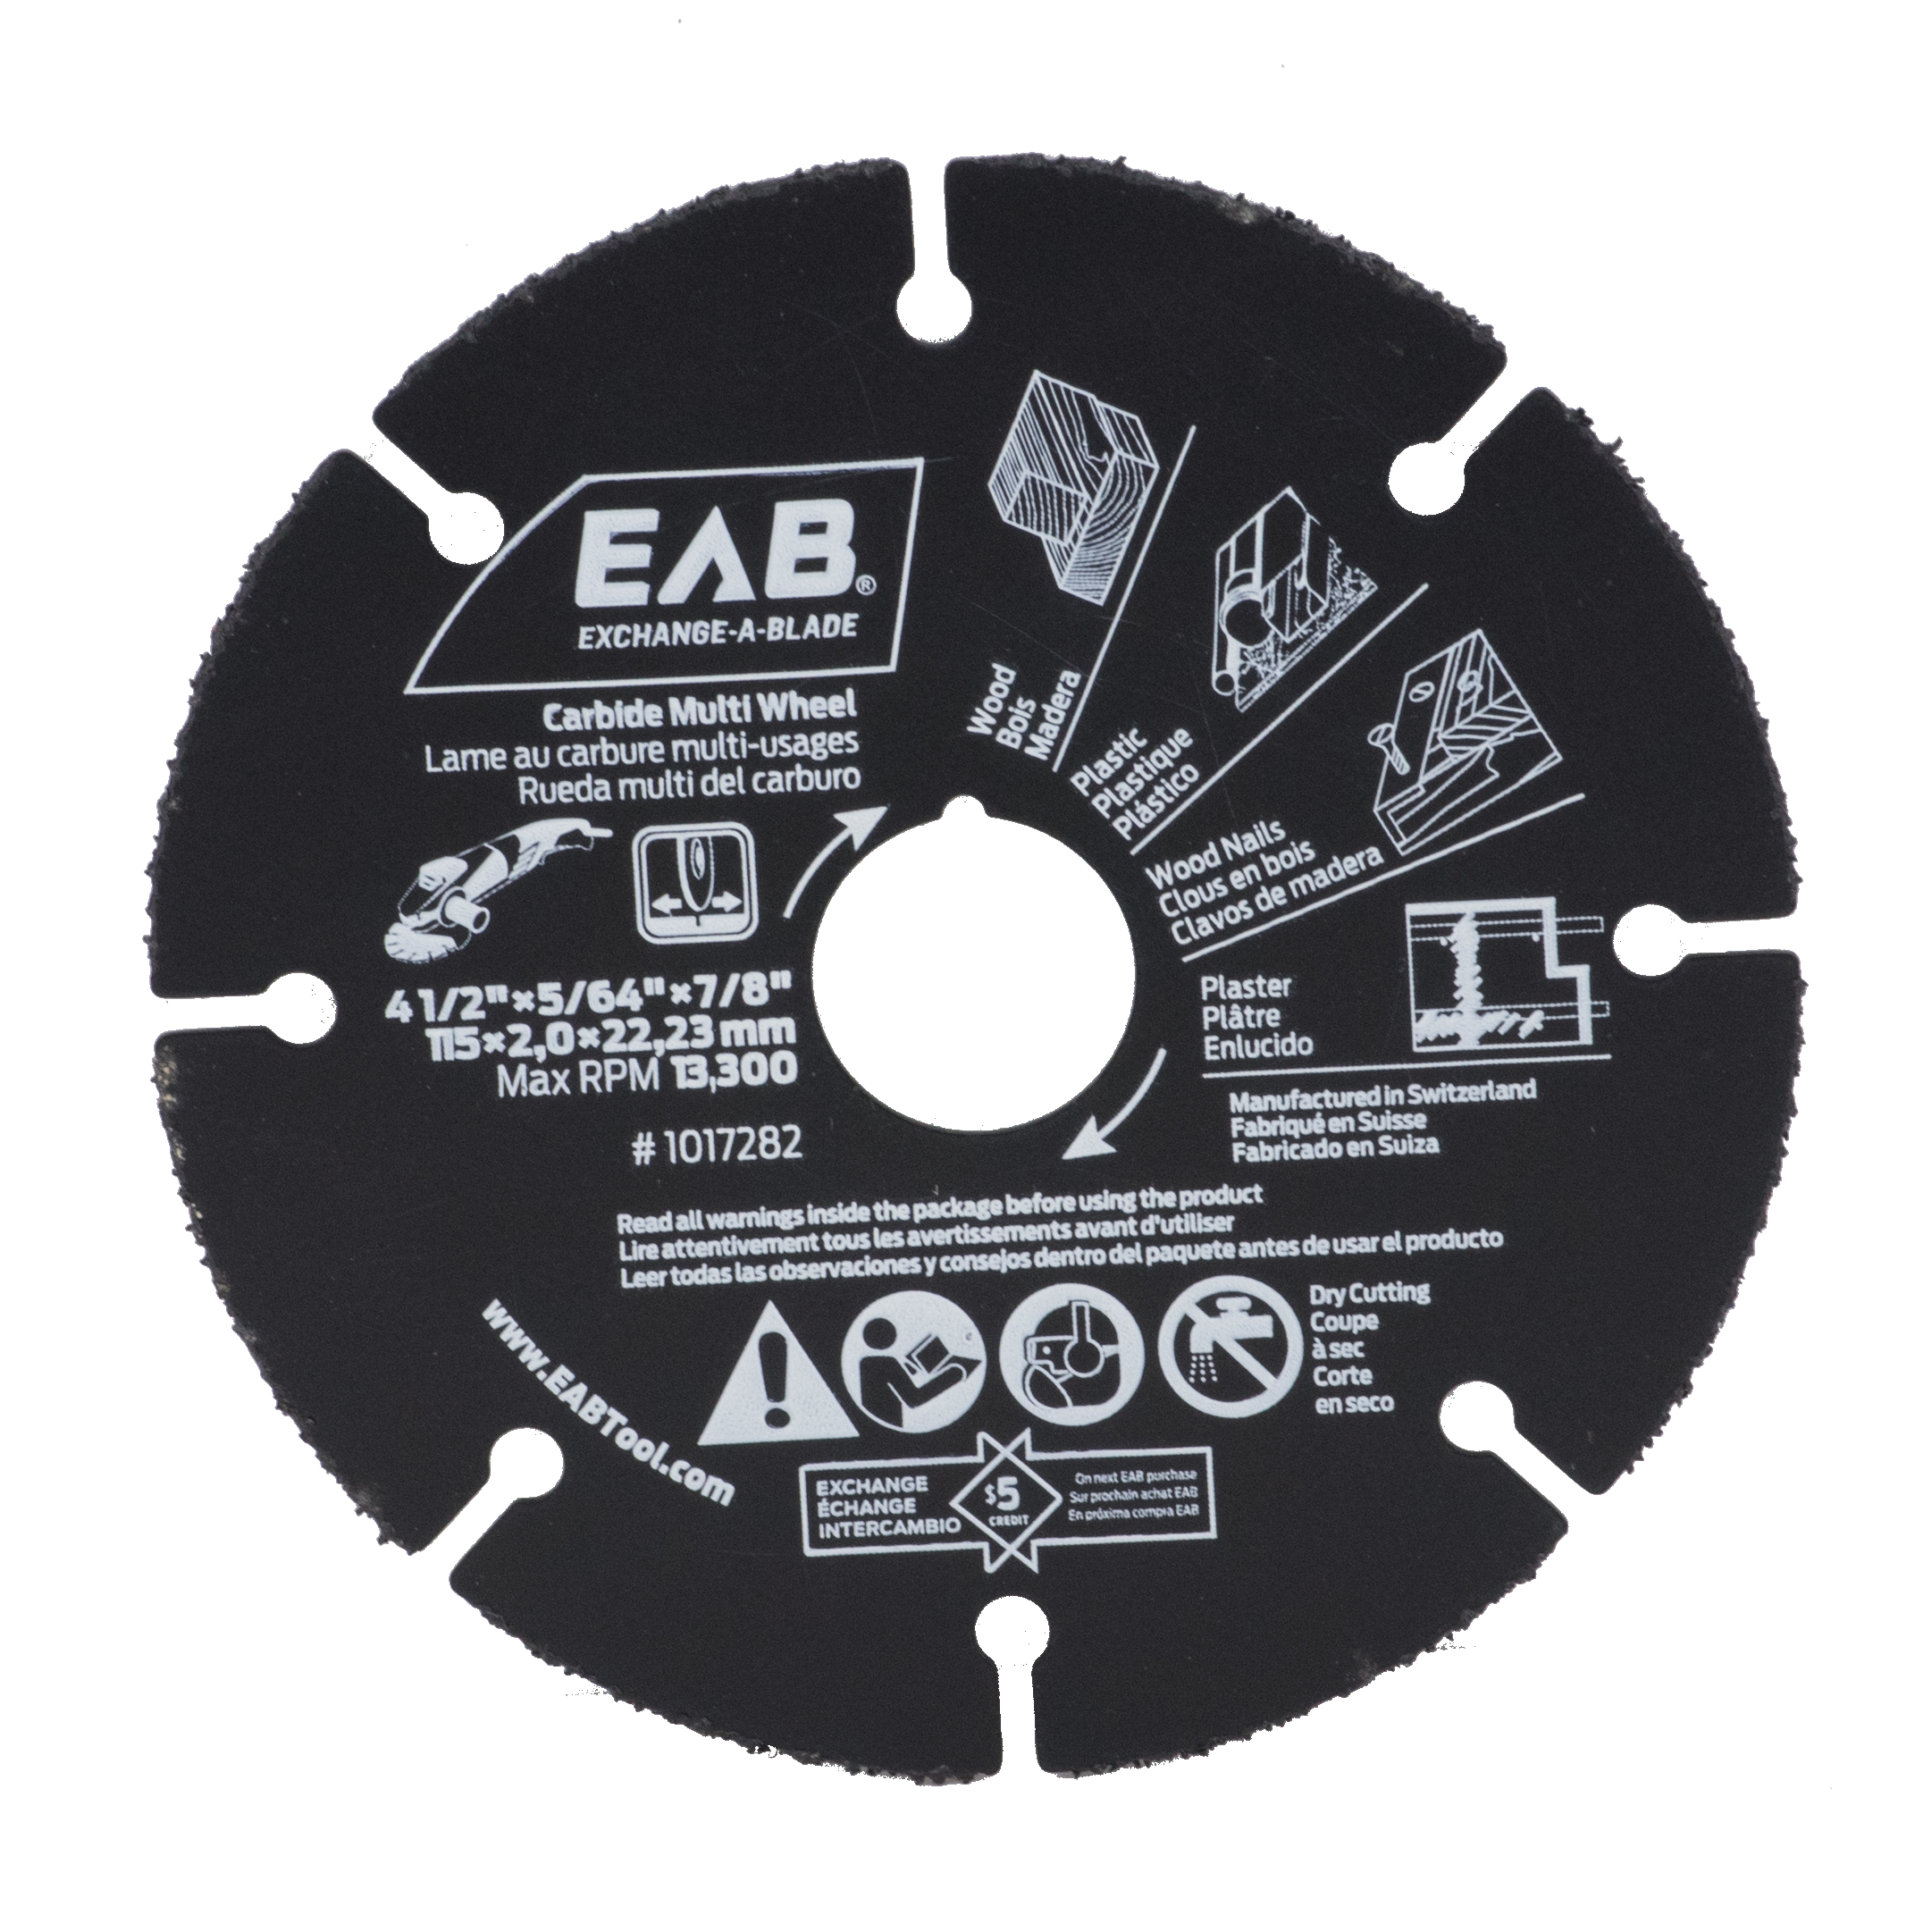 EAB (1017282) product